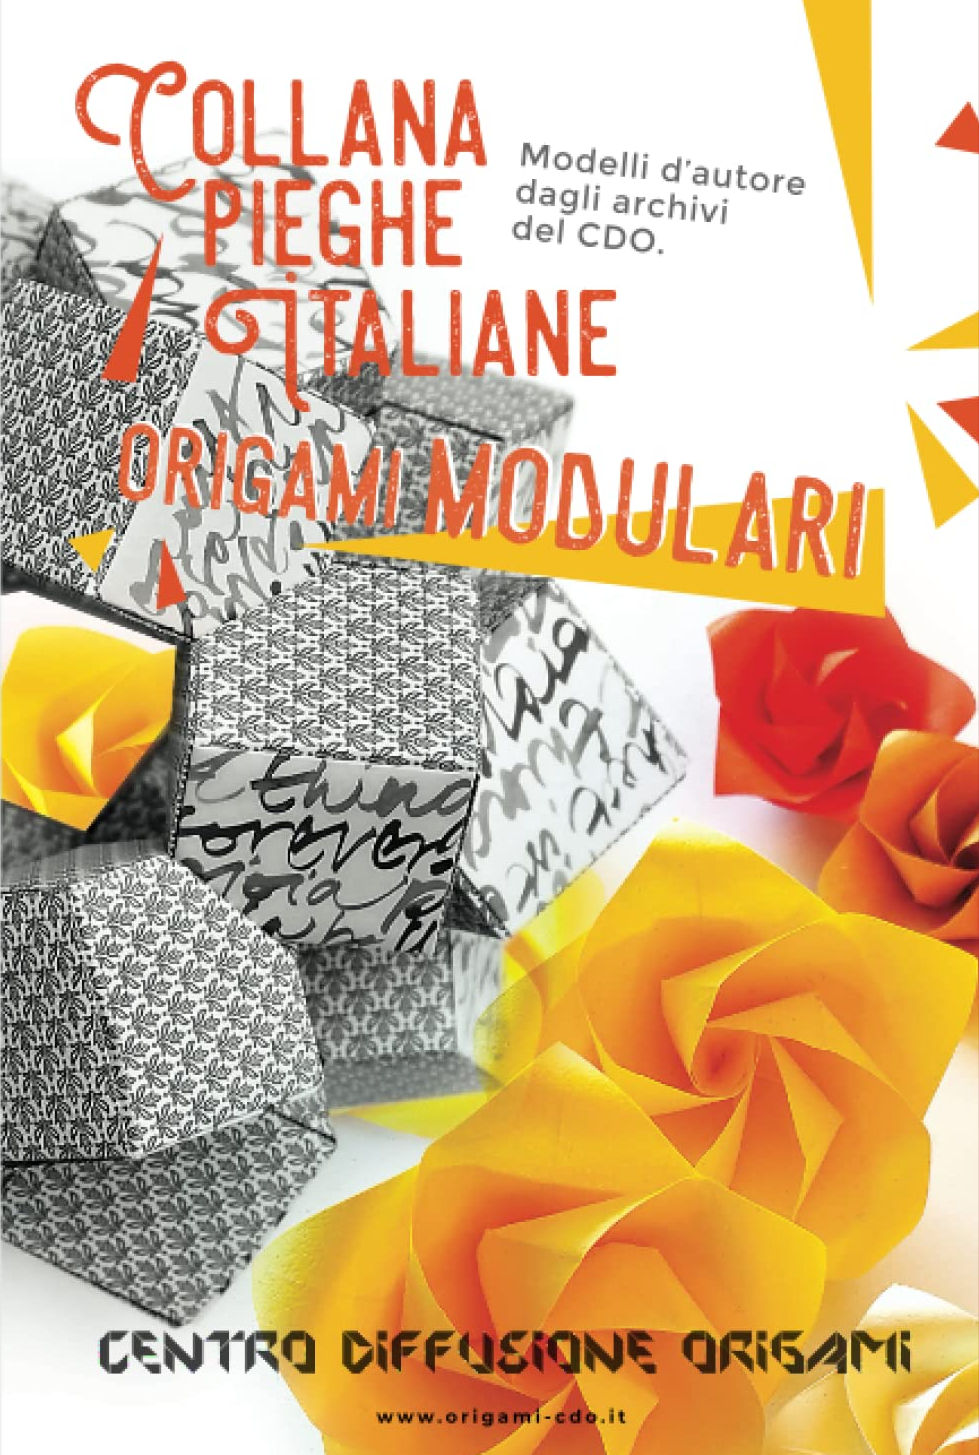 Collana pieghe Italiane - origami MODULARI : page 26.